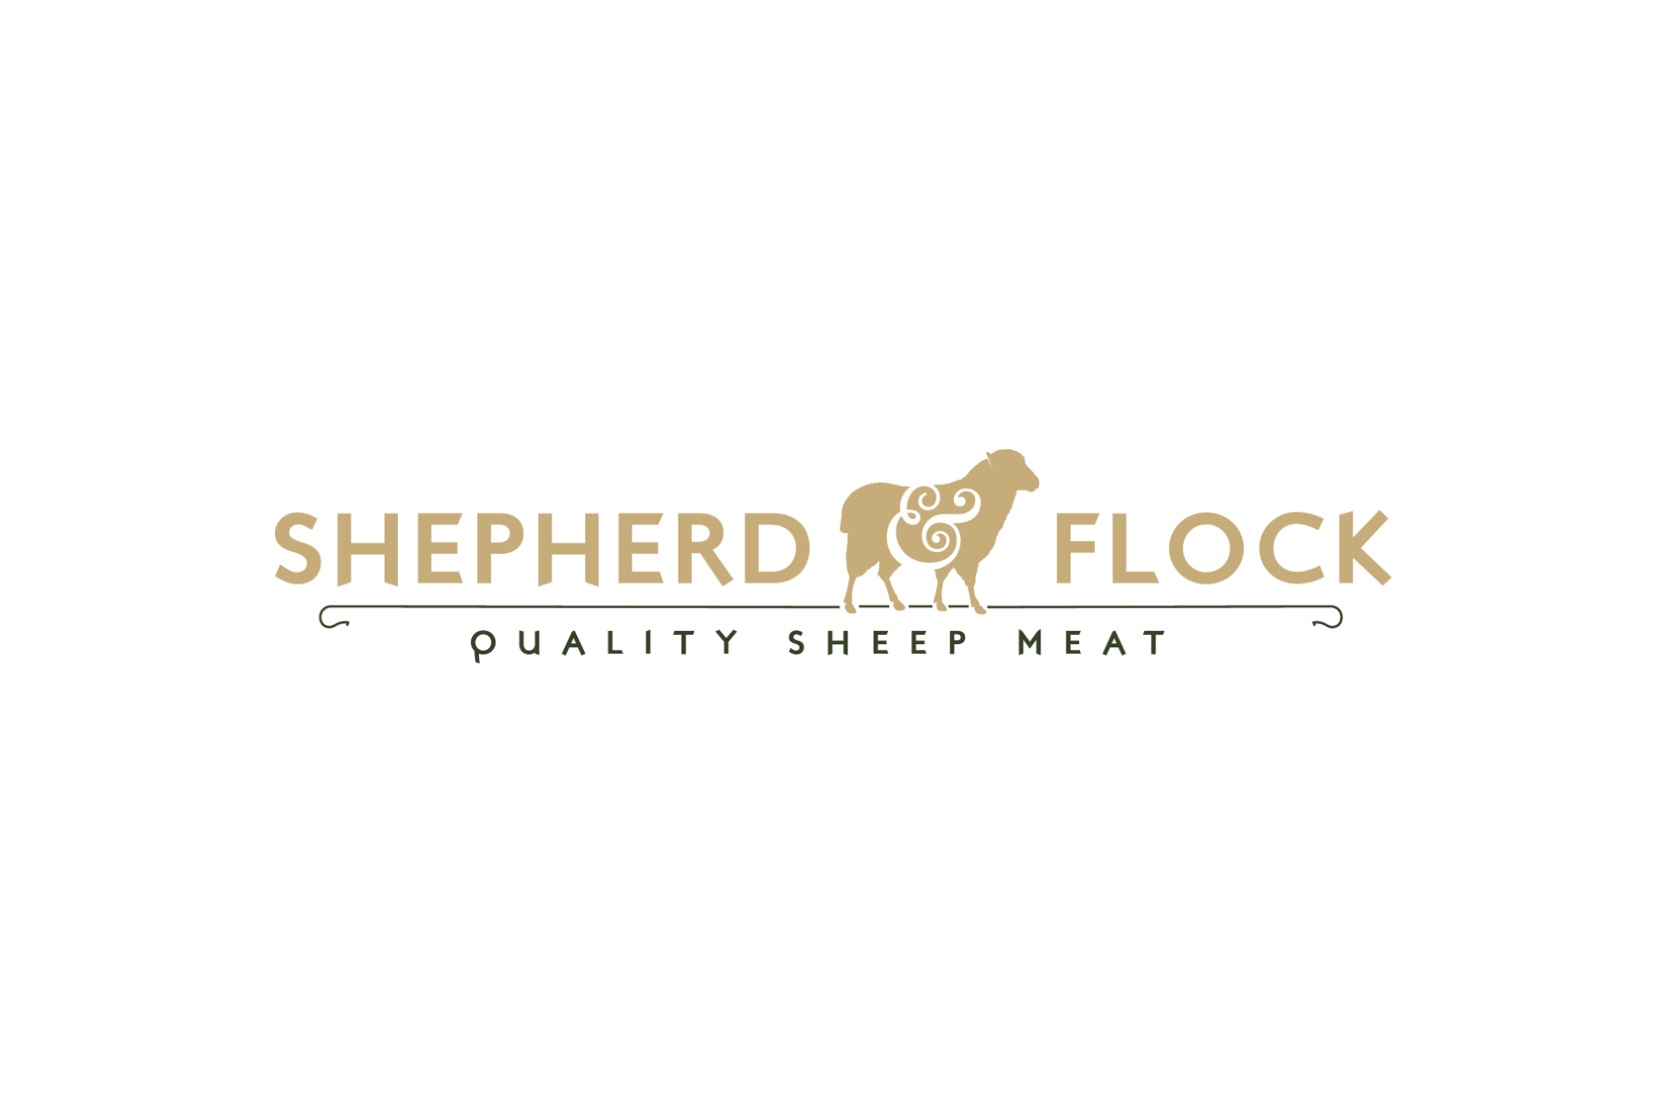 Shepherd & Flock